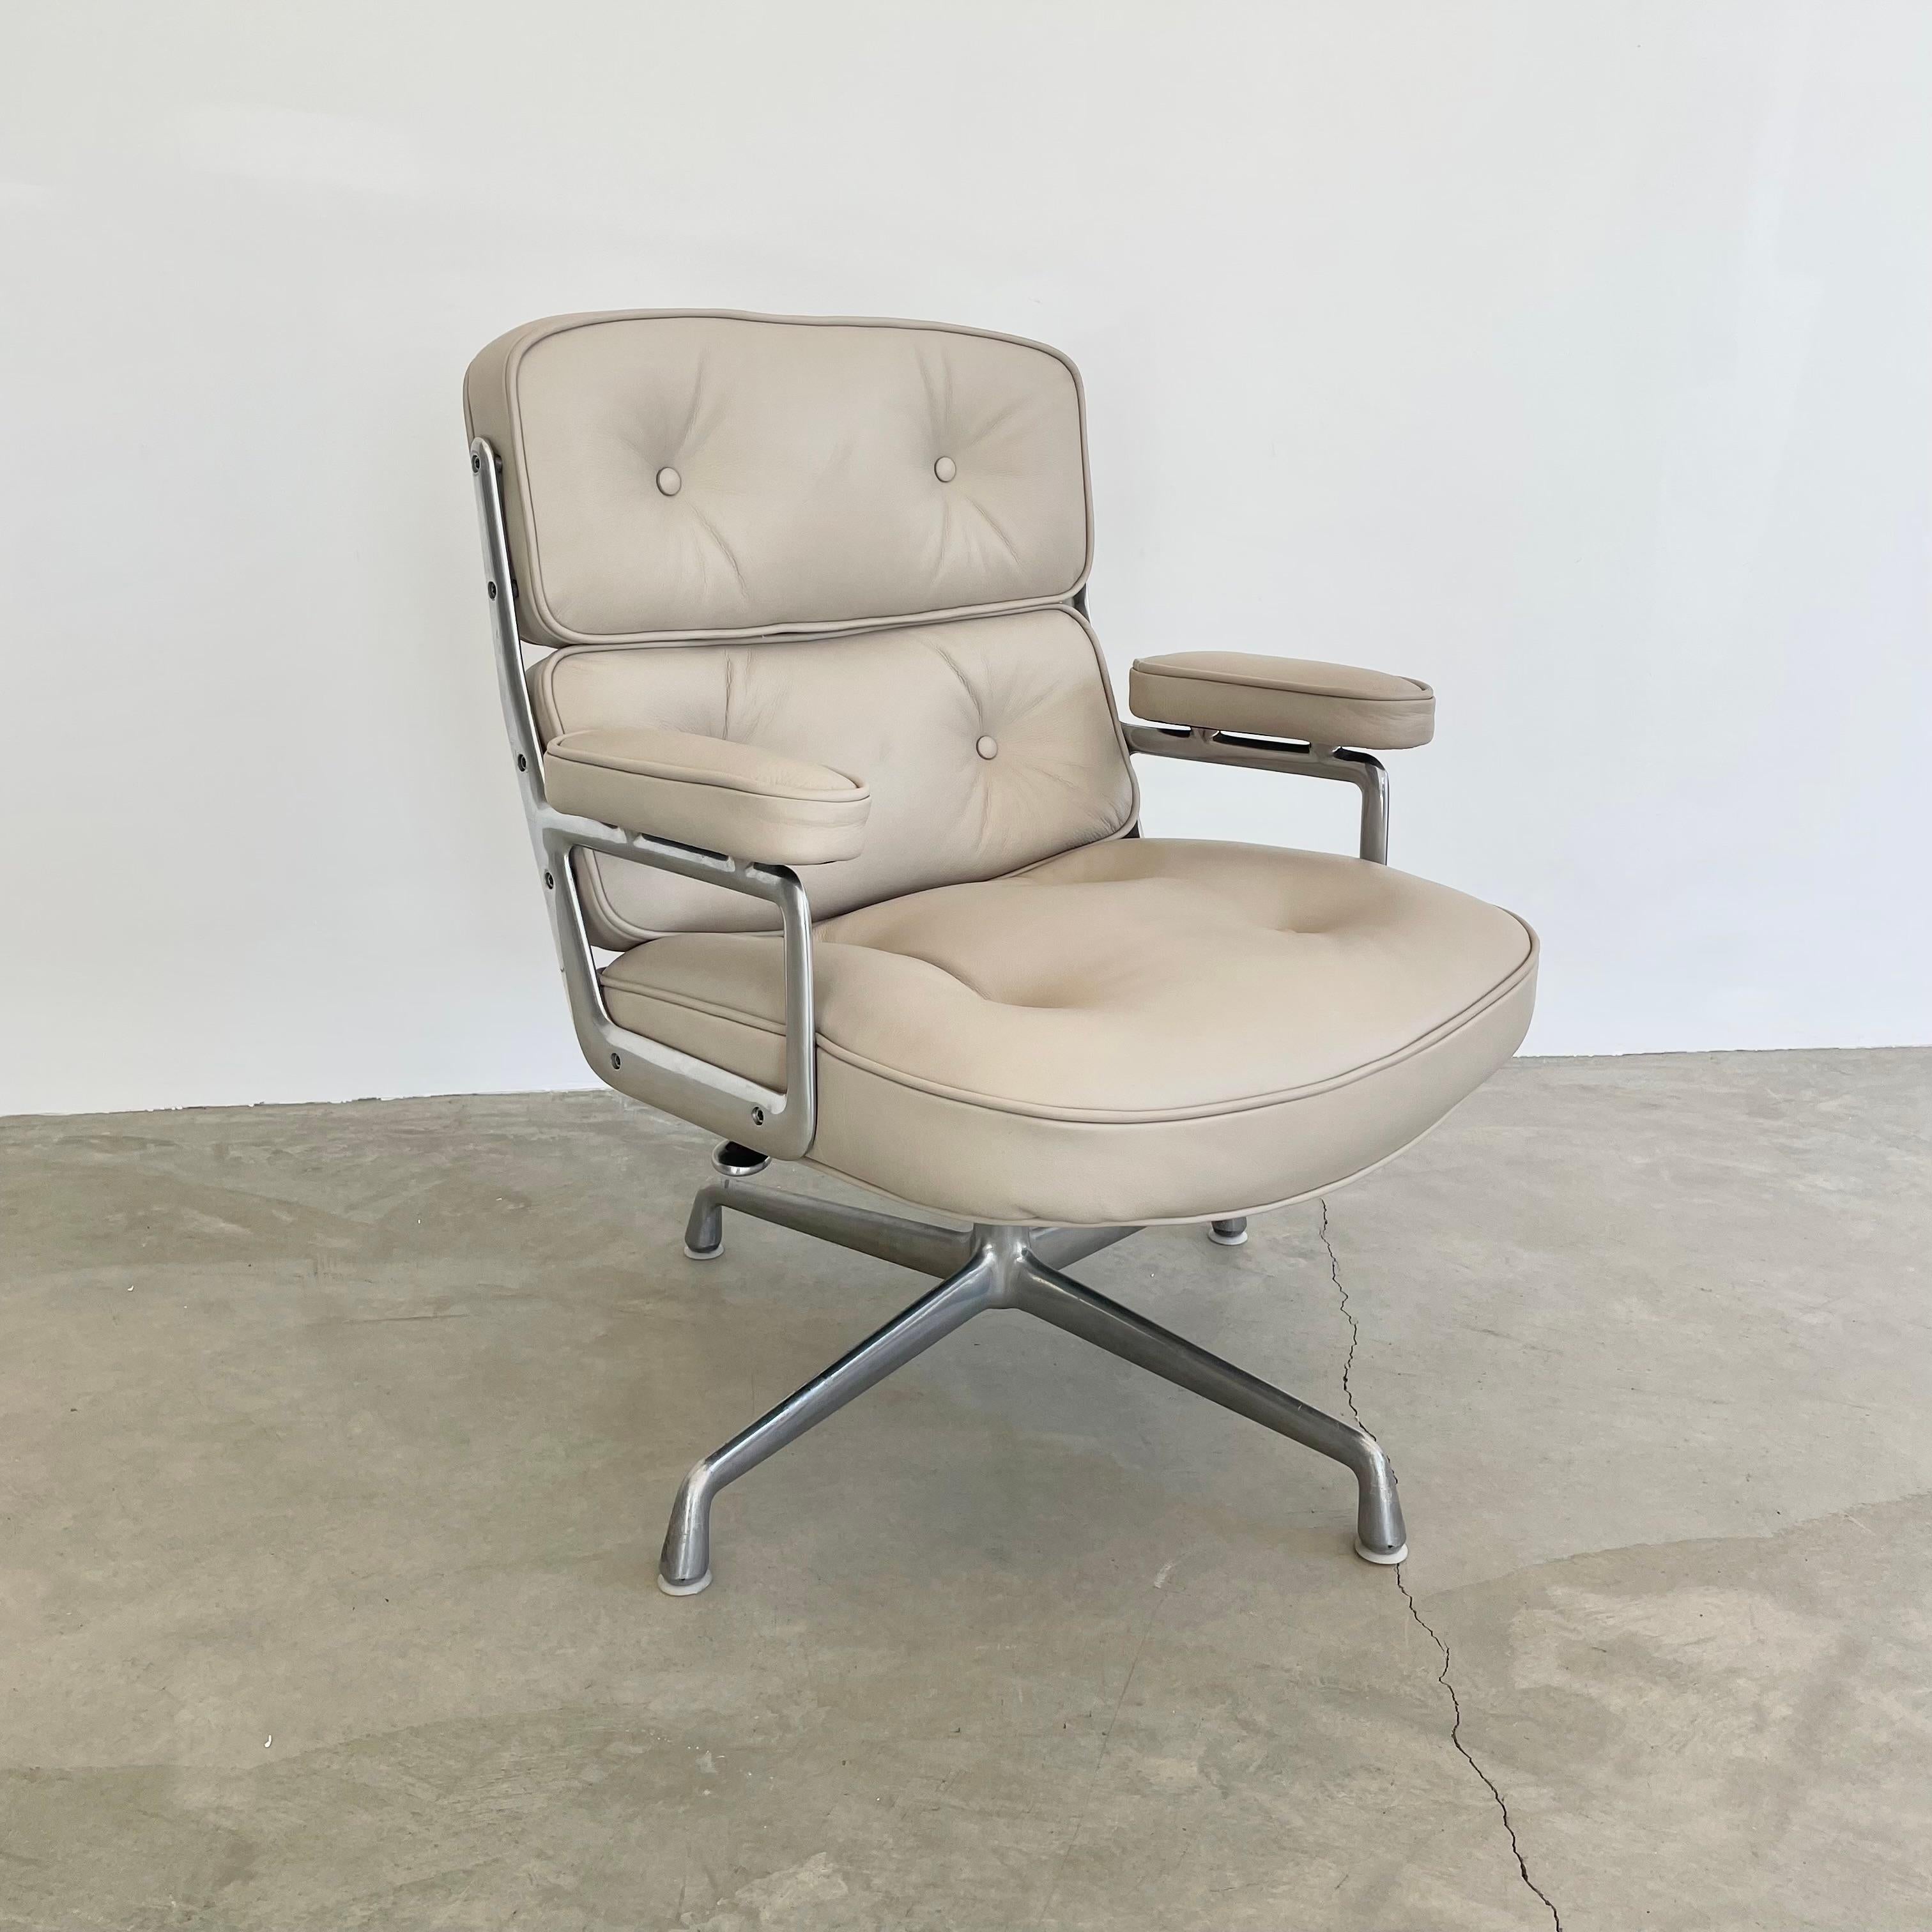 Chaise classique Eames Time Life pour Herman Miller en cuir gris clair avec un cadre et des pieds en aluminium poli fabriqués à Los Angeles, CA. Conçu à l'origine en 1960 par Charles et Ray Eames pour le hall d'entrée de l'immeuble Time Life à New